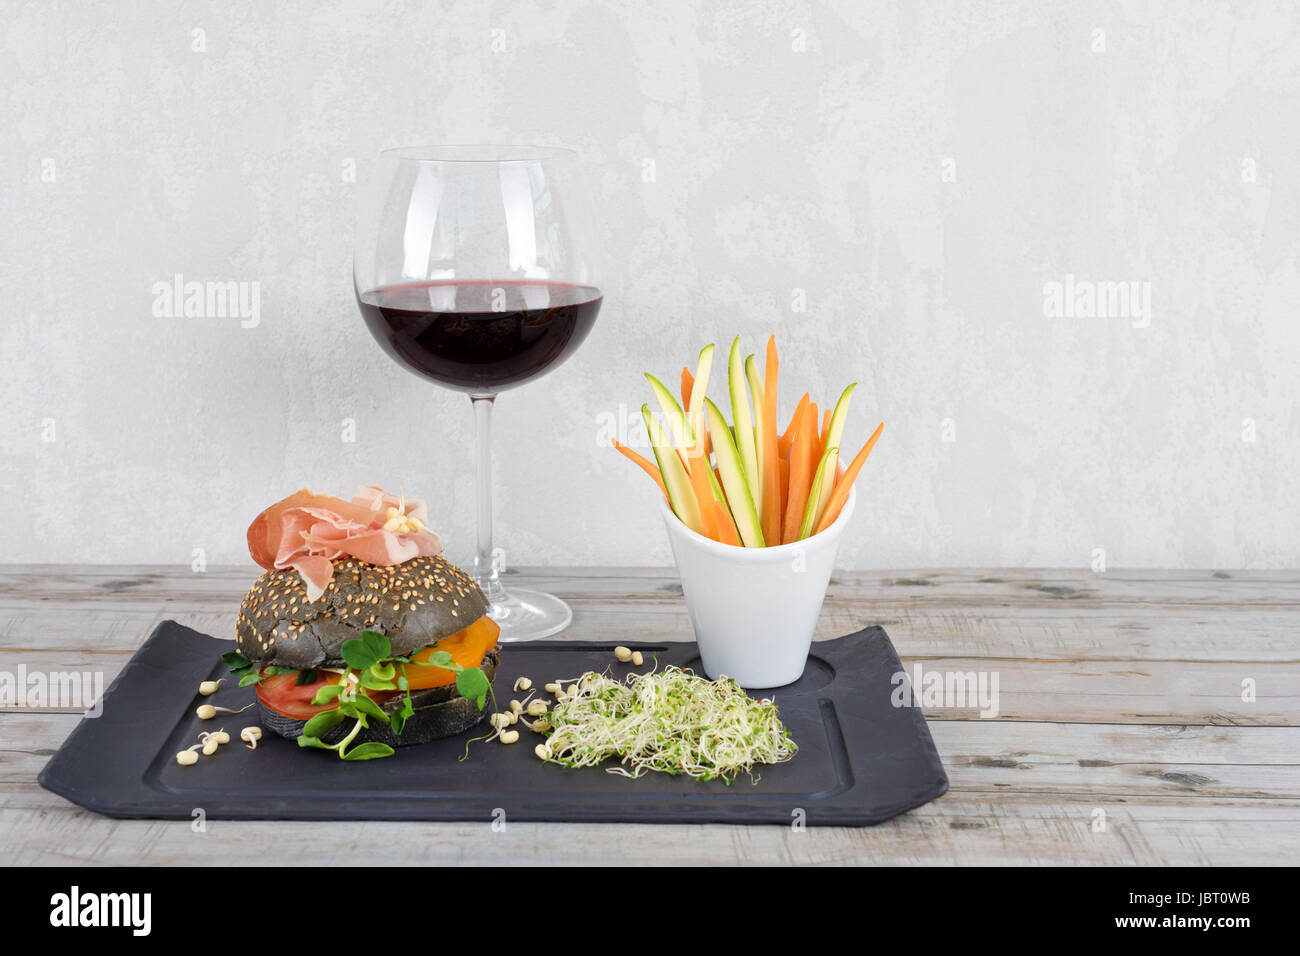 Gesunde Burger mit Hamon, Tomaten, Mikro grünen und schwarzen Vollkorn Brötchen, Gemüsesticks und Rotwein auf Schiefer Tafel über hölzerne Hintergrund. Sauber Essen, Diäten, detox Food-Konzept. Stockfoto